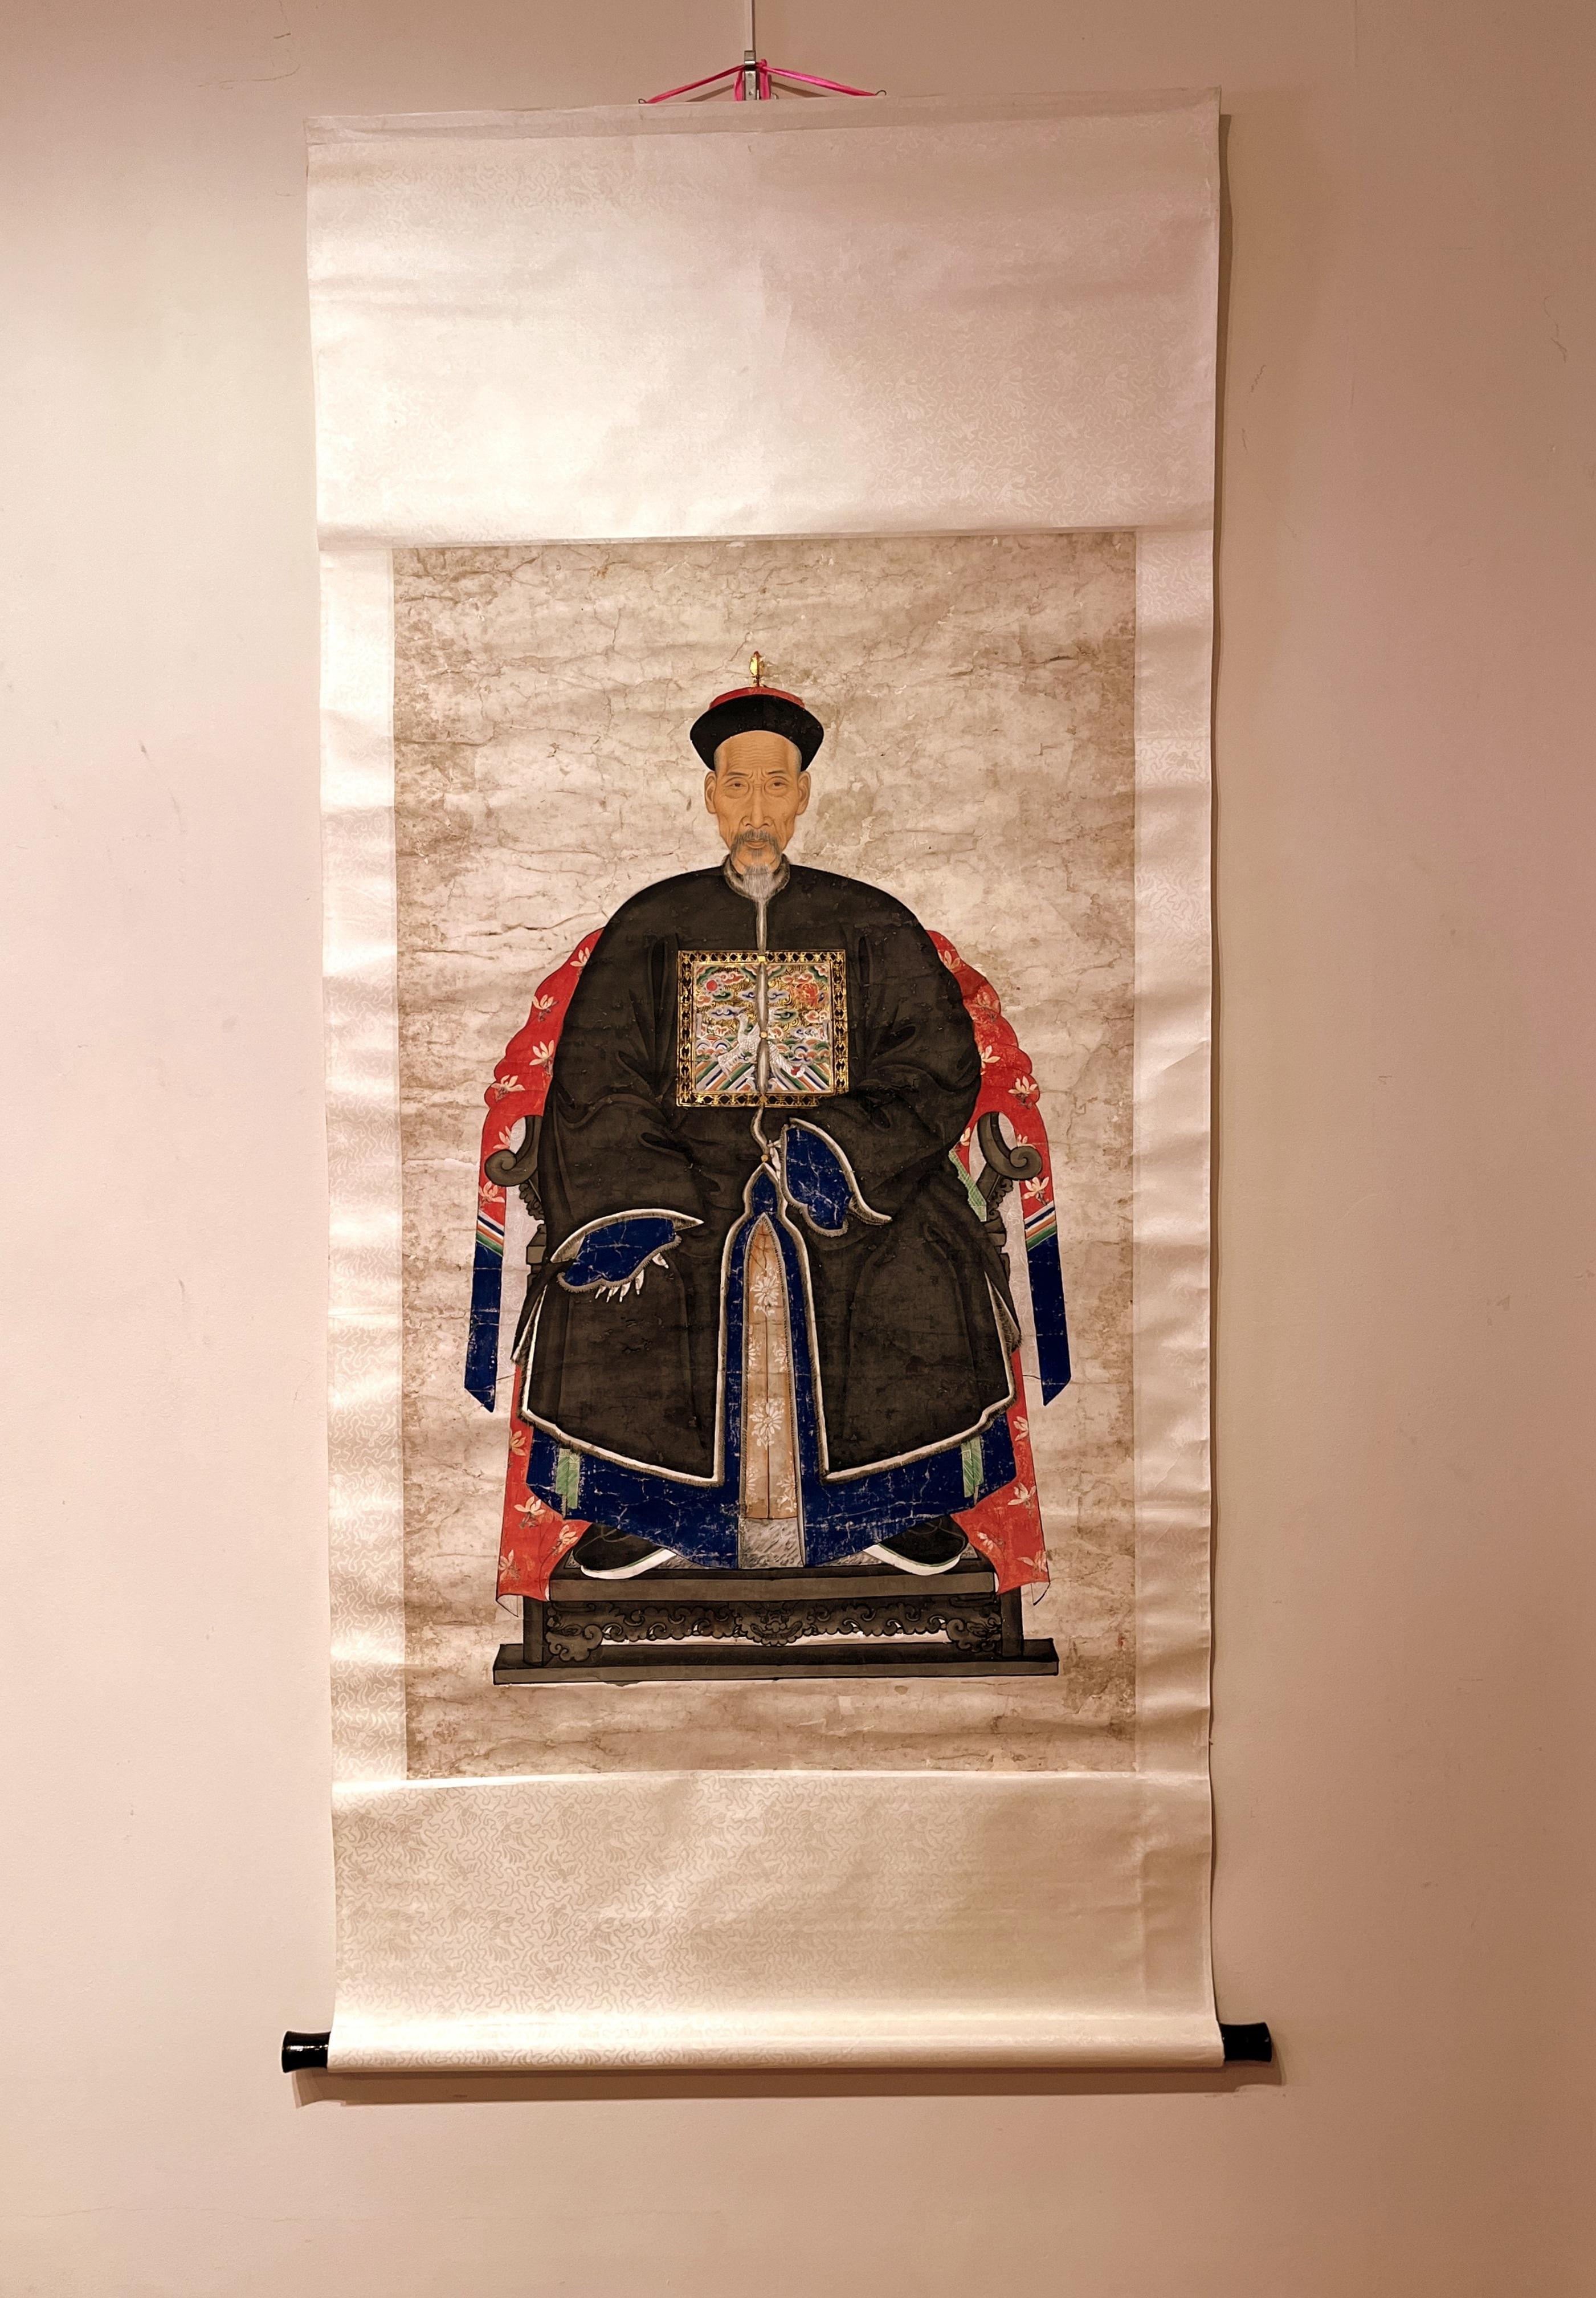 Chinesisches Ahnenporträt eines kaiserlichen Offiziers der Qing-Dynastie, 19. Jahrhundert,
Der kaiserliche Offizier sitzt in würdiger Haltung auf einem Stuhl mit Hufeisenlehne, trägt einen offiziellen Hut und ein Rangabzeichen mit einem